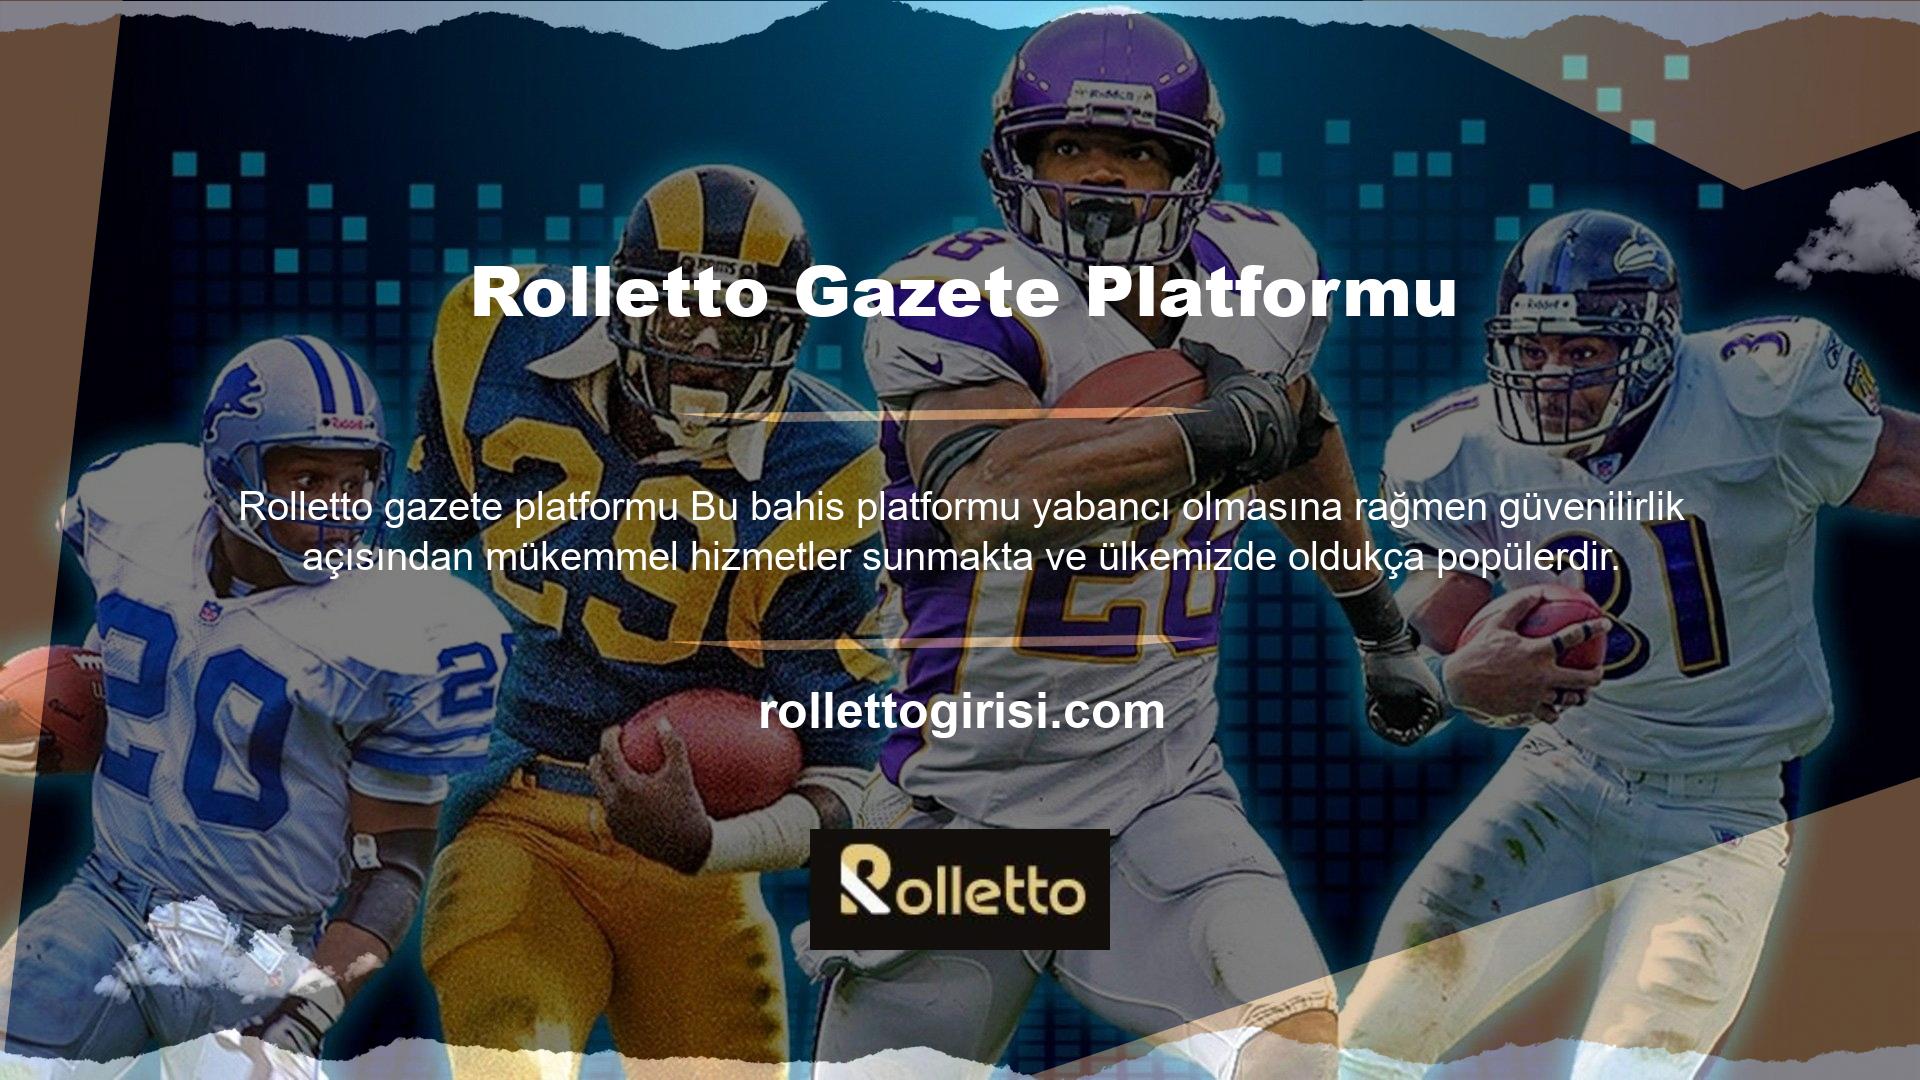 Rolletto gazete platformu tamamen ülkemiz mevzuatı çerçevesinde faaliyet göstermektedir ve dünya çapında çok satanlar lisansına sahiptir